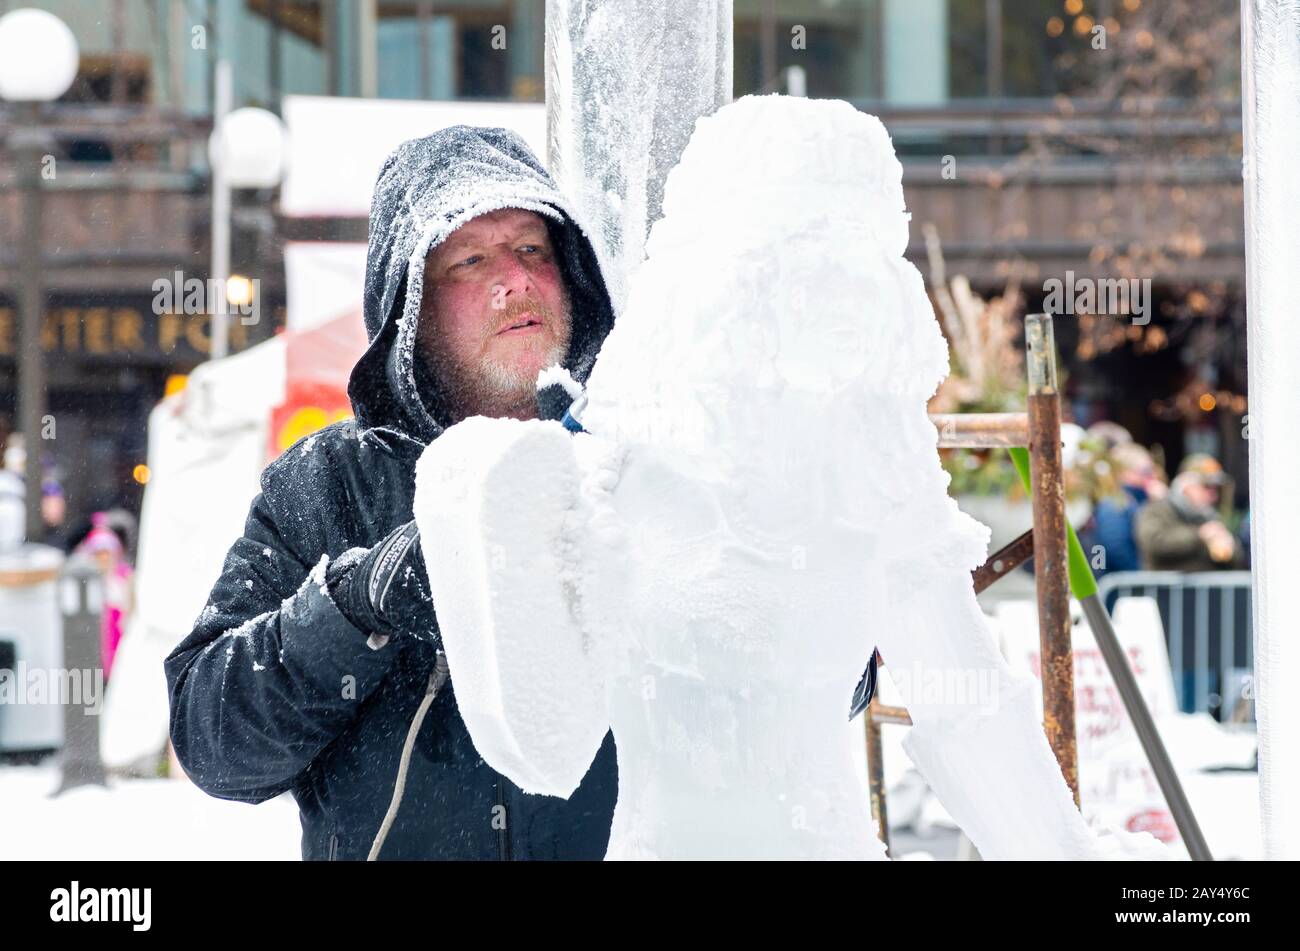 St Paul, MN/USA - 25 janvier 2020: Sculpteur de glace façonnant des œuvres d'art lors de la compétition de sculpture de glace de carnaval d'hiver. Banque D'Images